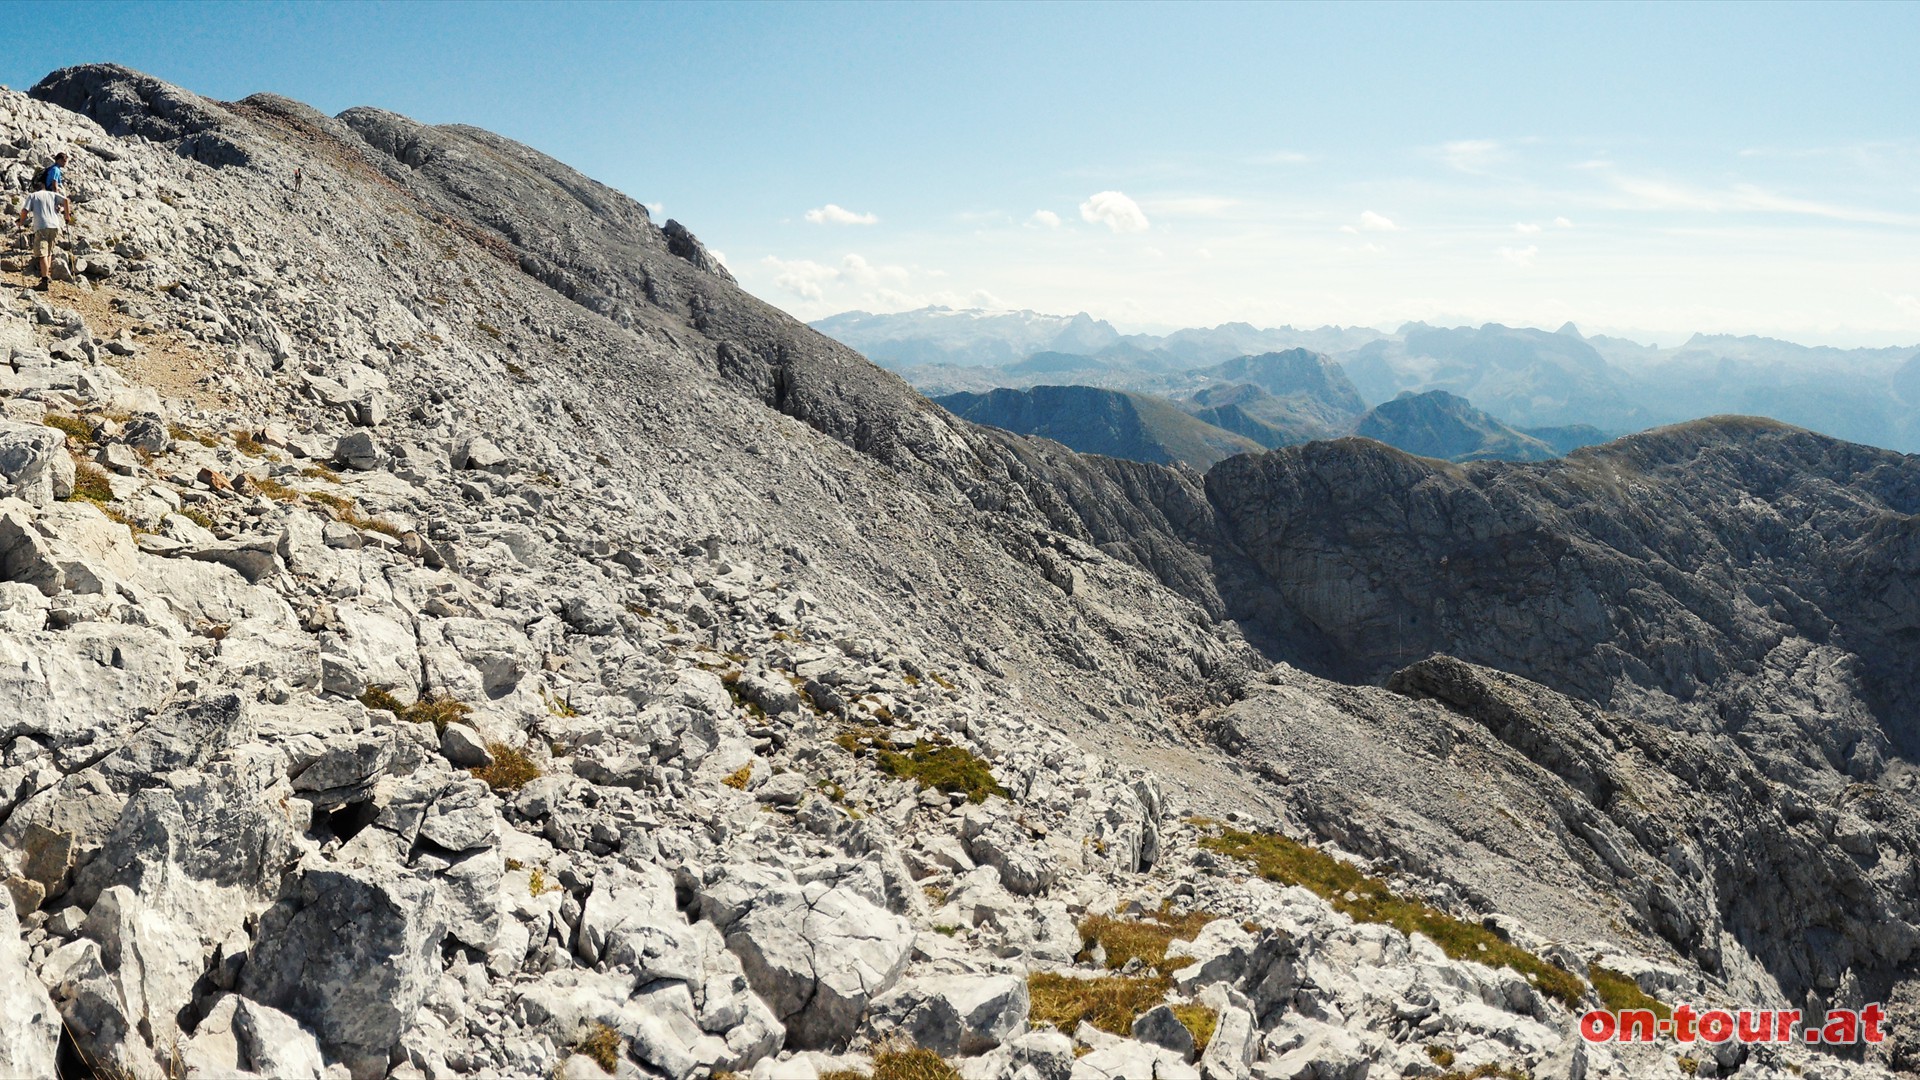 Letzter Gipfelanstieg ber den breiten Rcken, nahe der Gratkante. Rechts, am Horizont, sind weite Teile der sdl. Berchtesgadener Alpen aufgereiht.